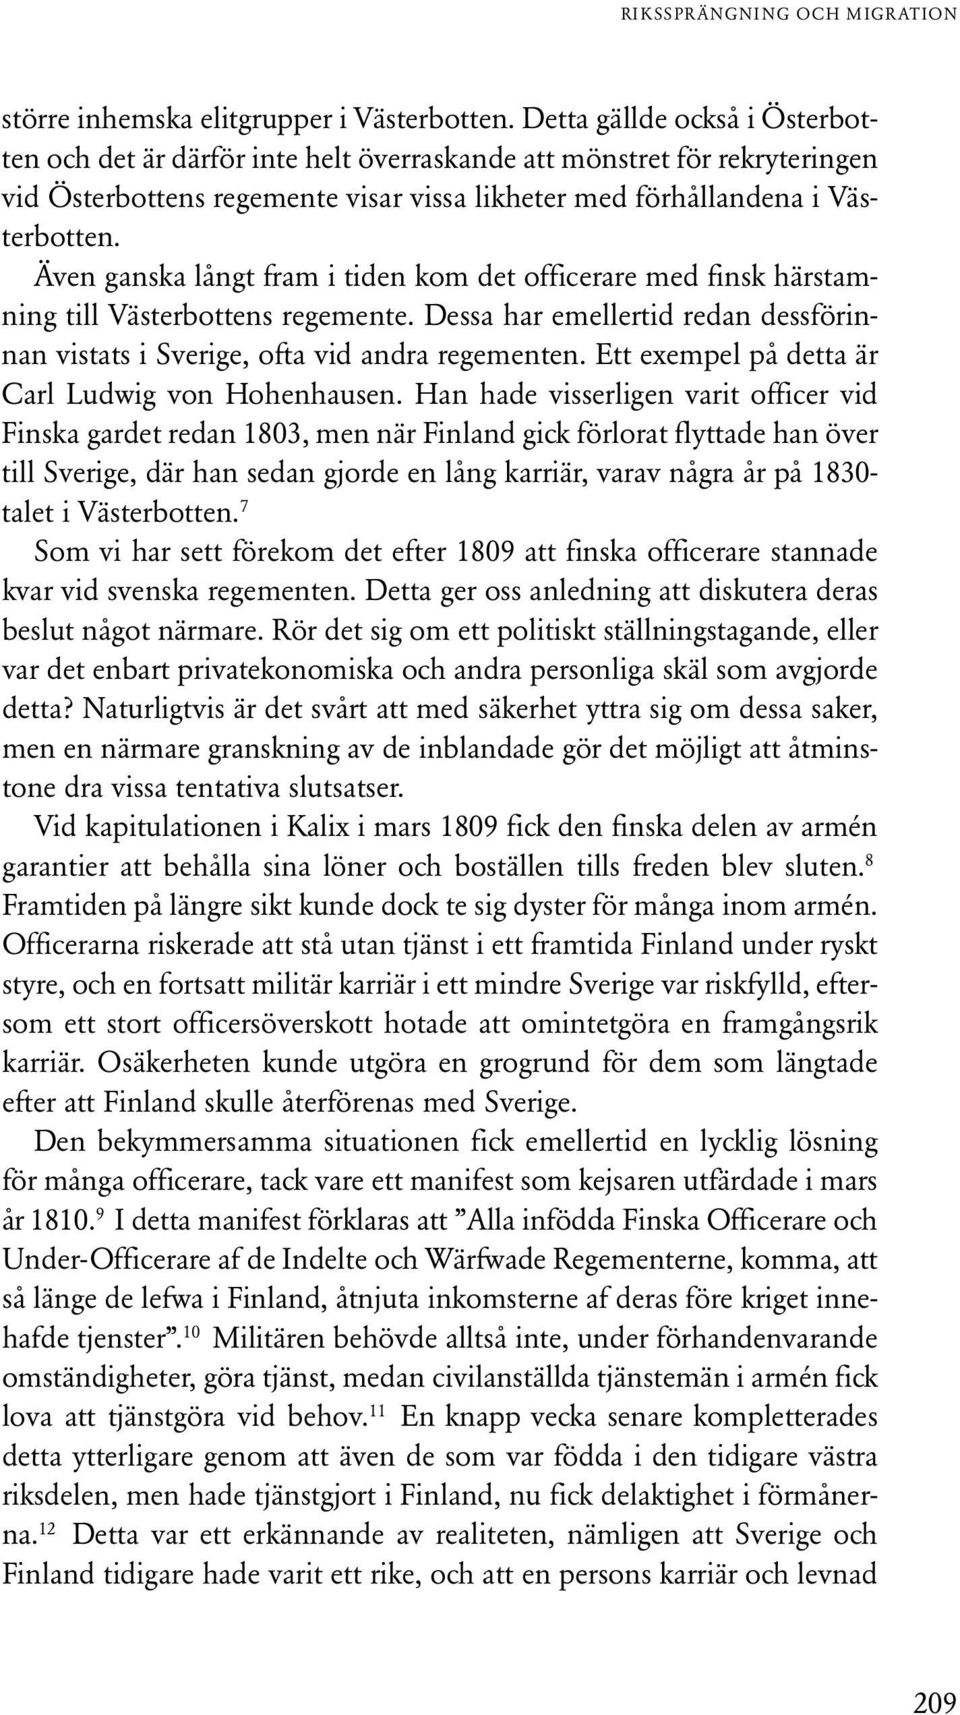 Även ganska långt fram i tiden kom det officerare med finsk härstamning till Västerbottens regemente. Dessa har emellertid redan dessförinnan vistats i Sverige, ofta vid andra regementen.